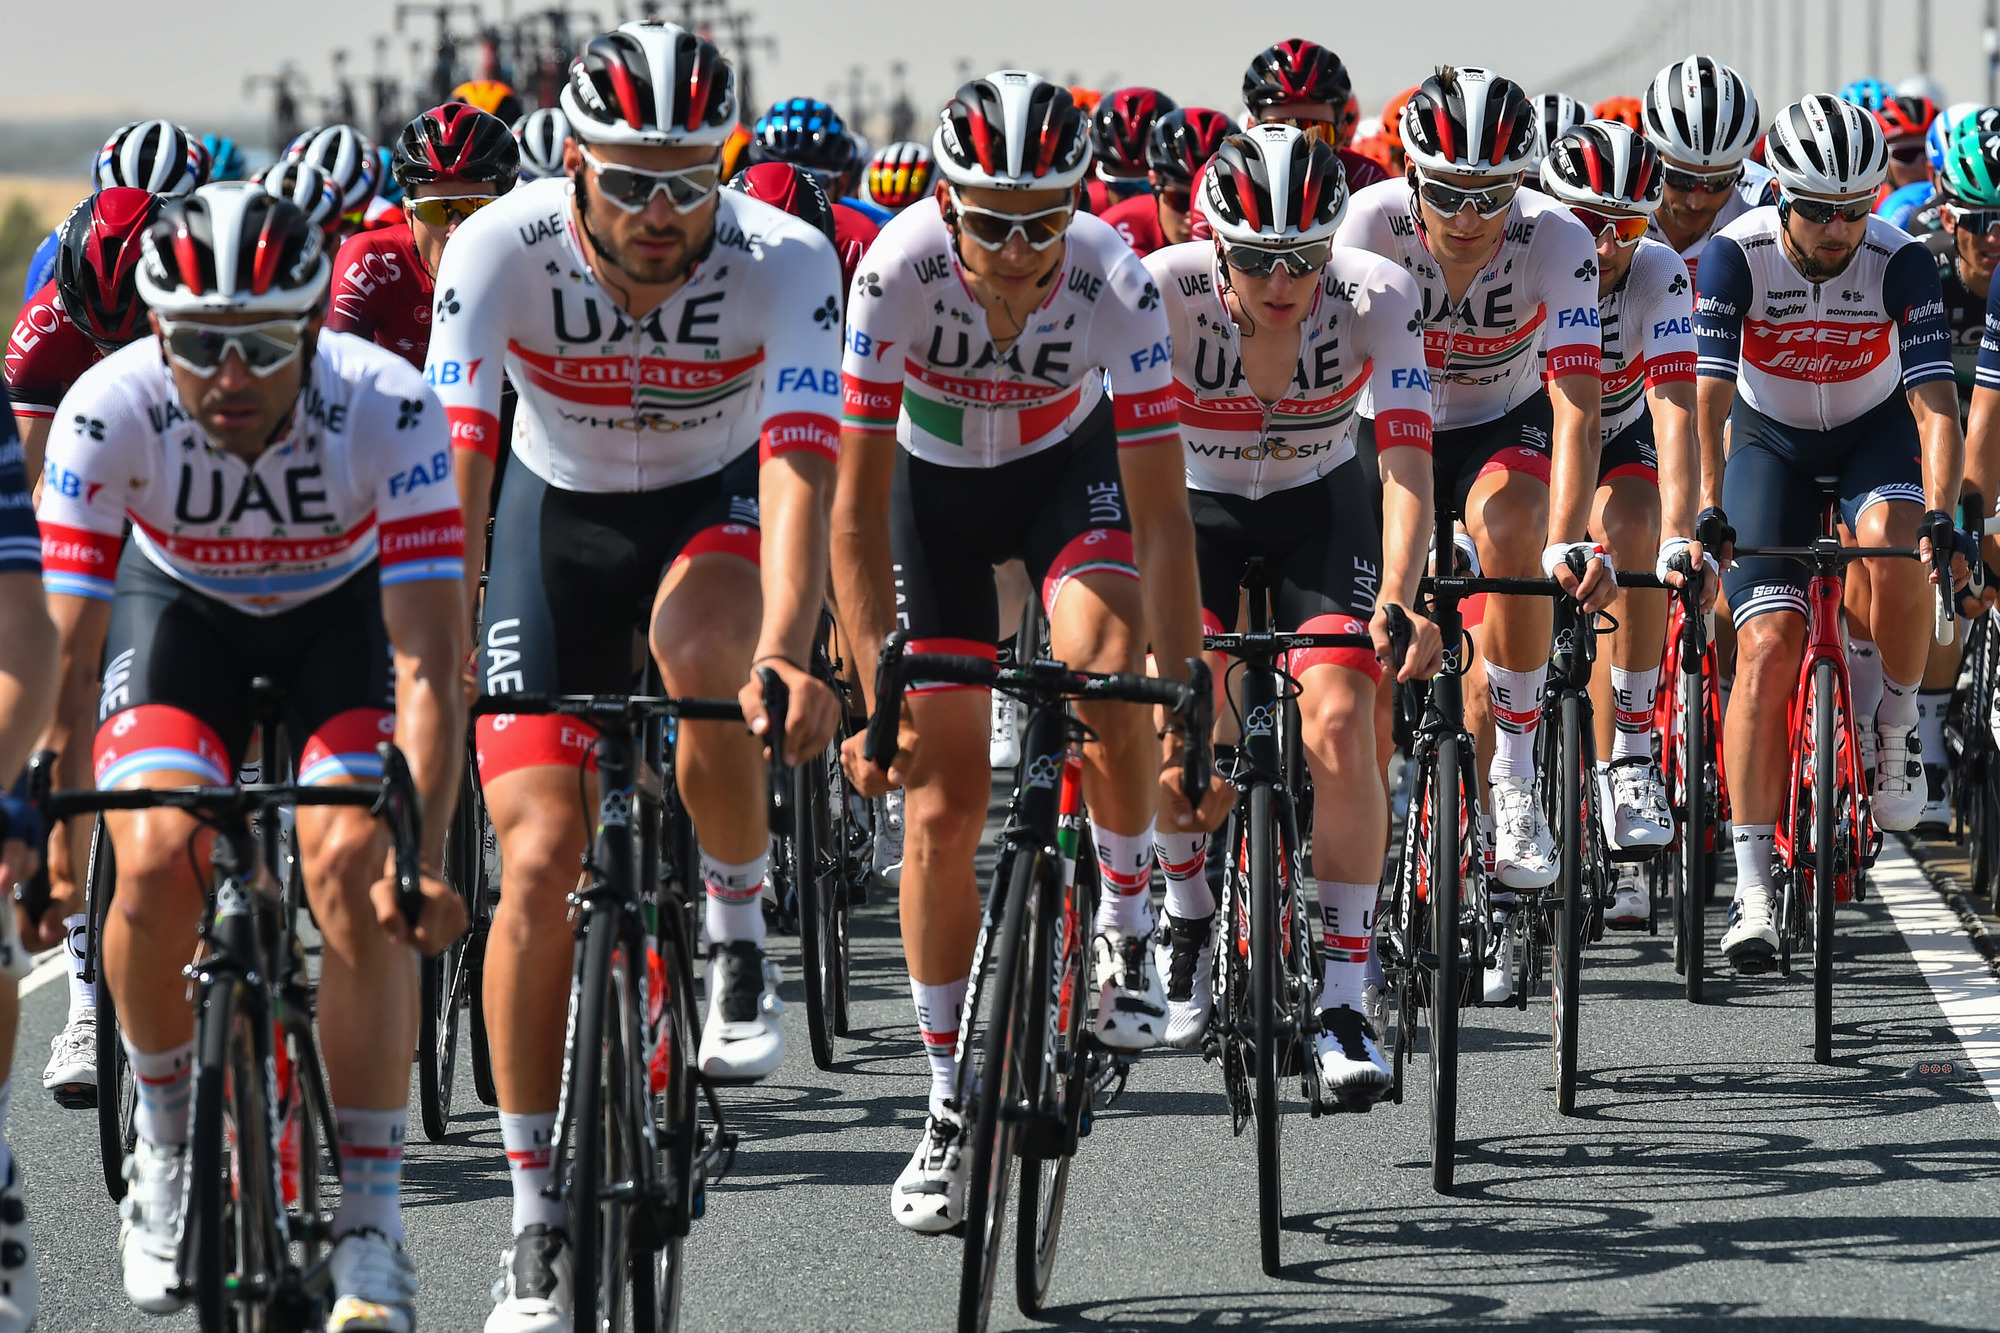 UAE Team Emirates confirm Pogacar, Aru and Kristoff for Tour de France